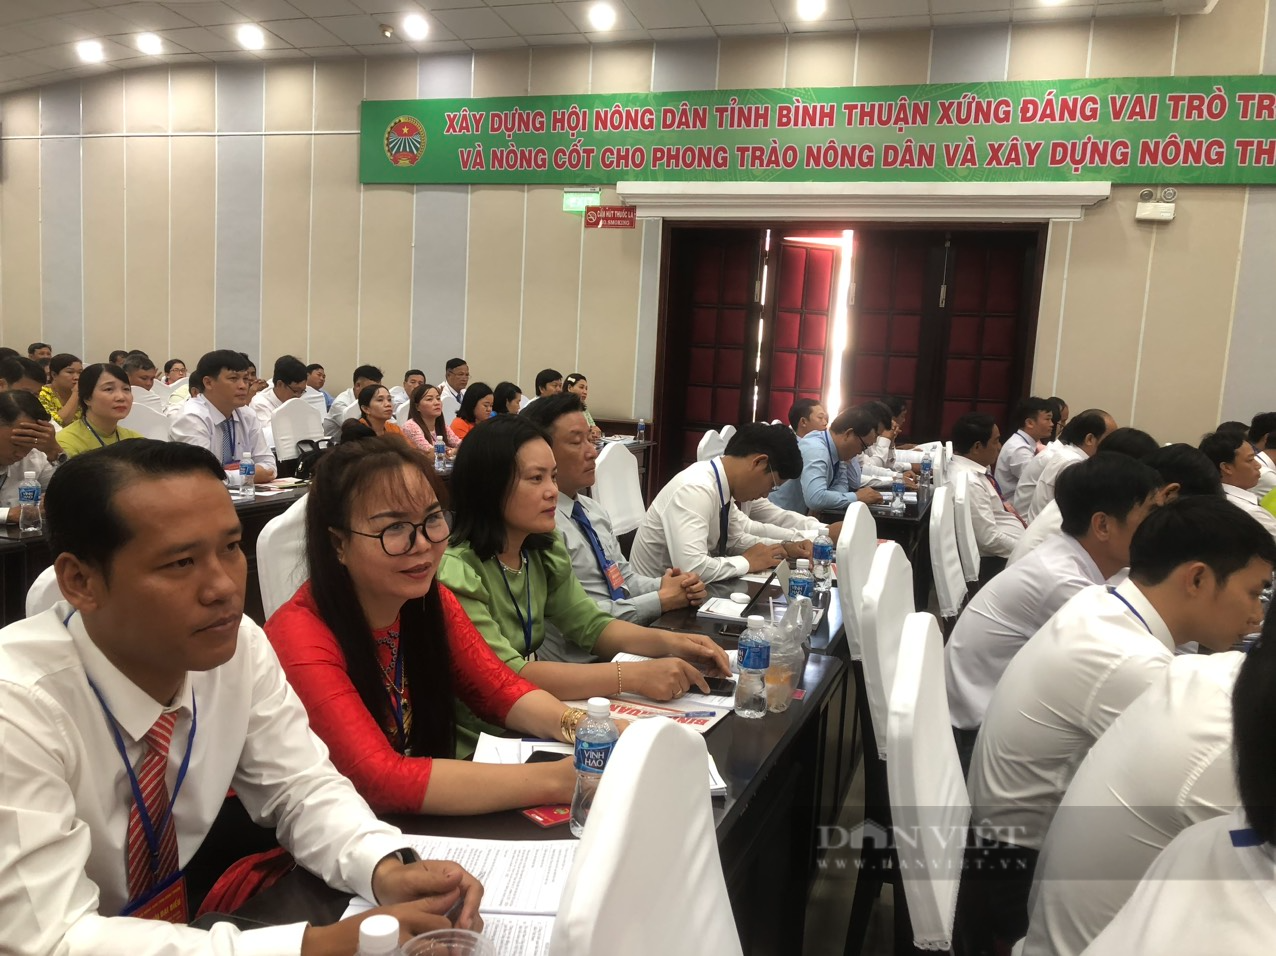 Bài phát biểu của Bí thư Tỉnh ủy tại Đại hội đại biểu Hội Nông dân tỉnh Bình Thuận nhiệm kỳ 2023 - 2028 - Ảnh 5.